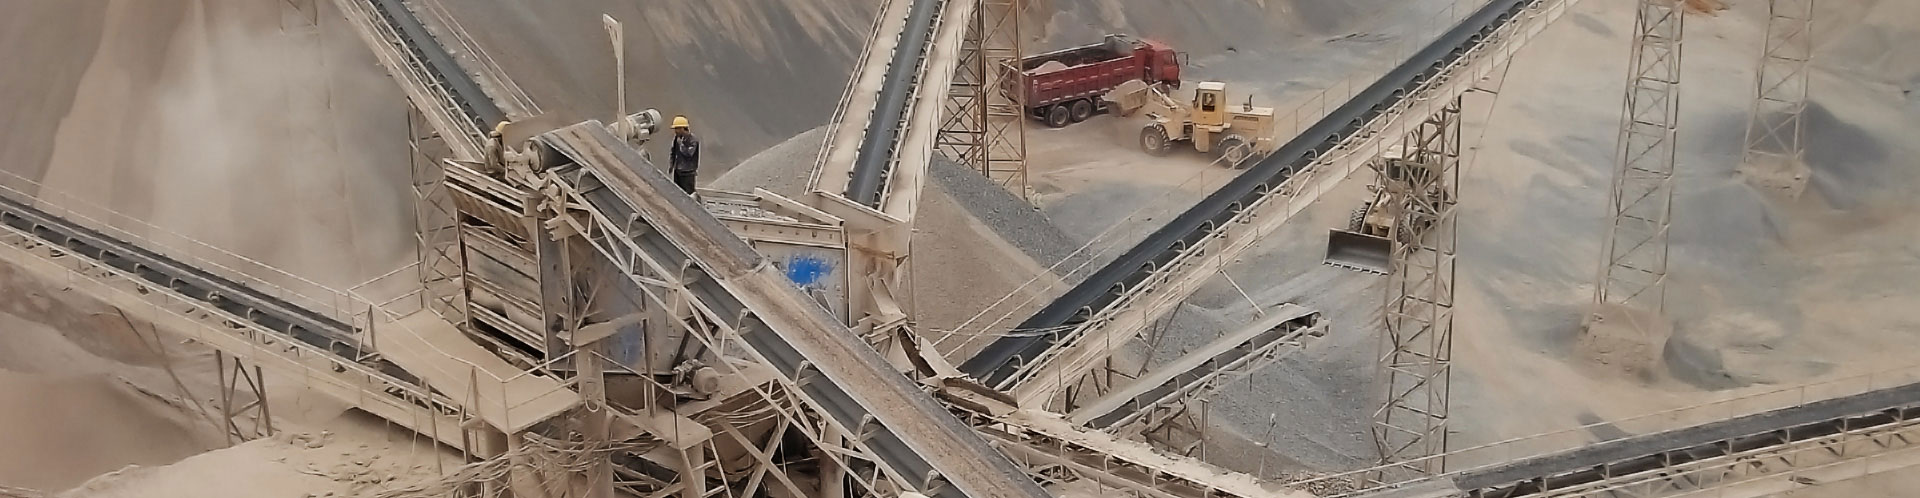 江西宜春時產500噸石灰石生產線 - 建筑垃圾破碎